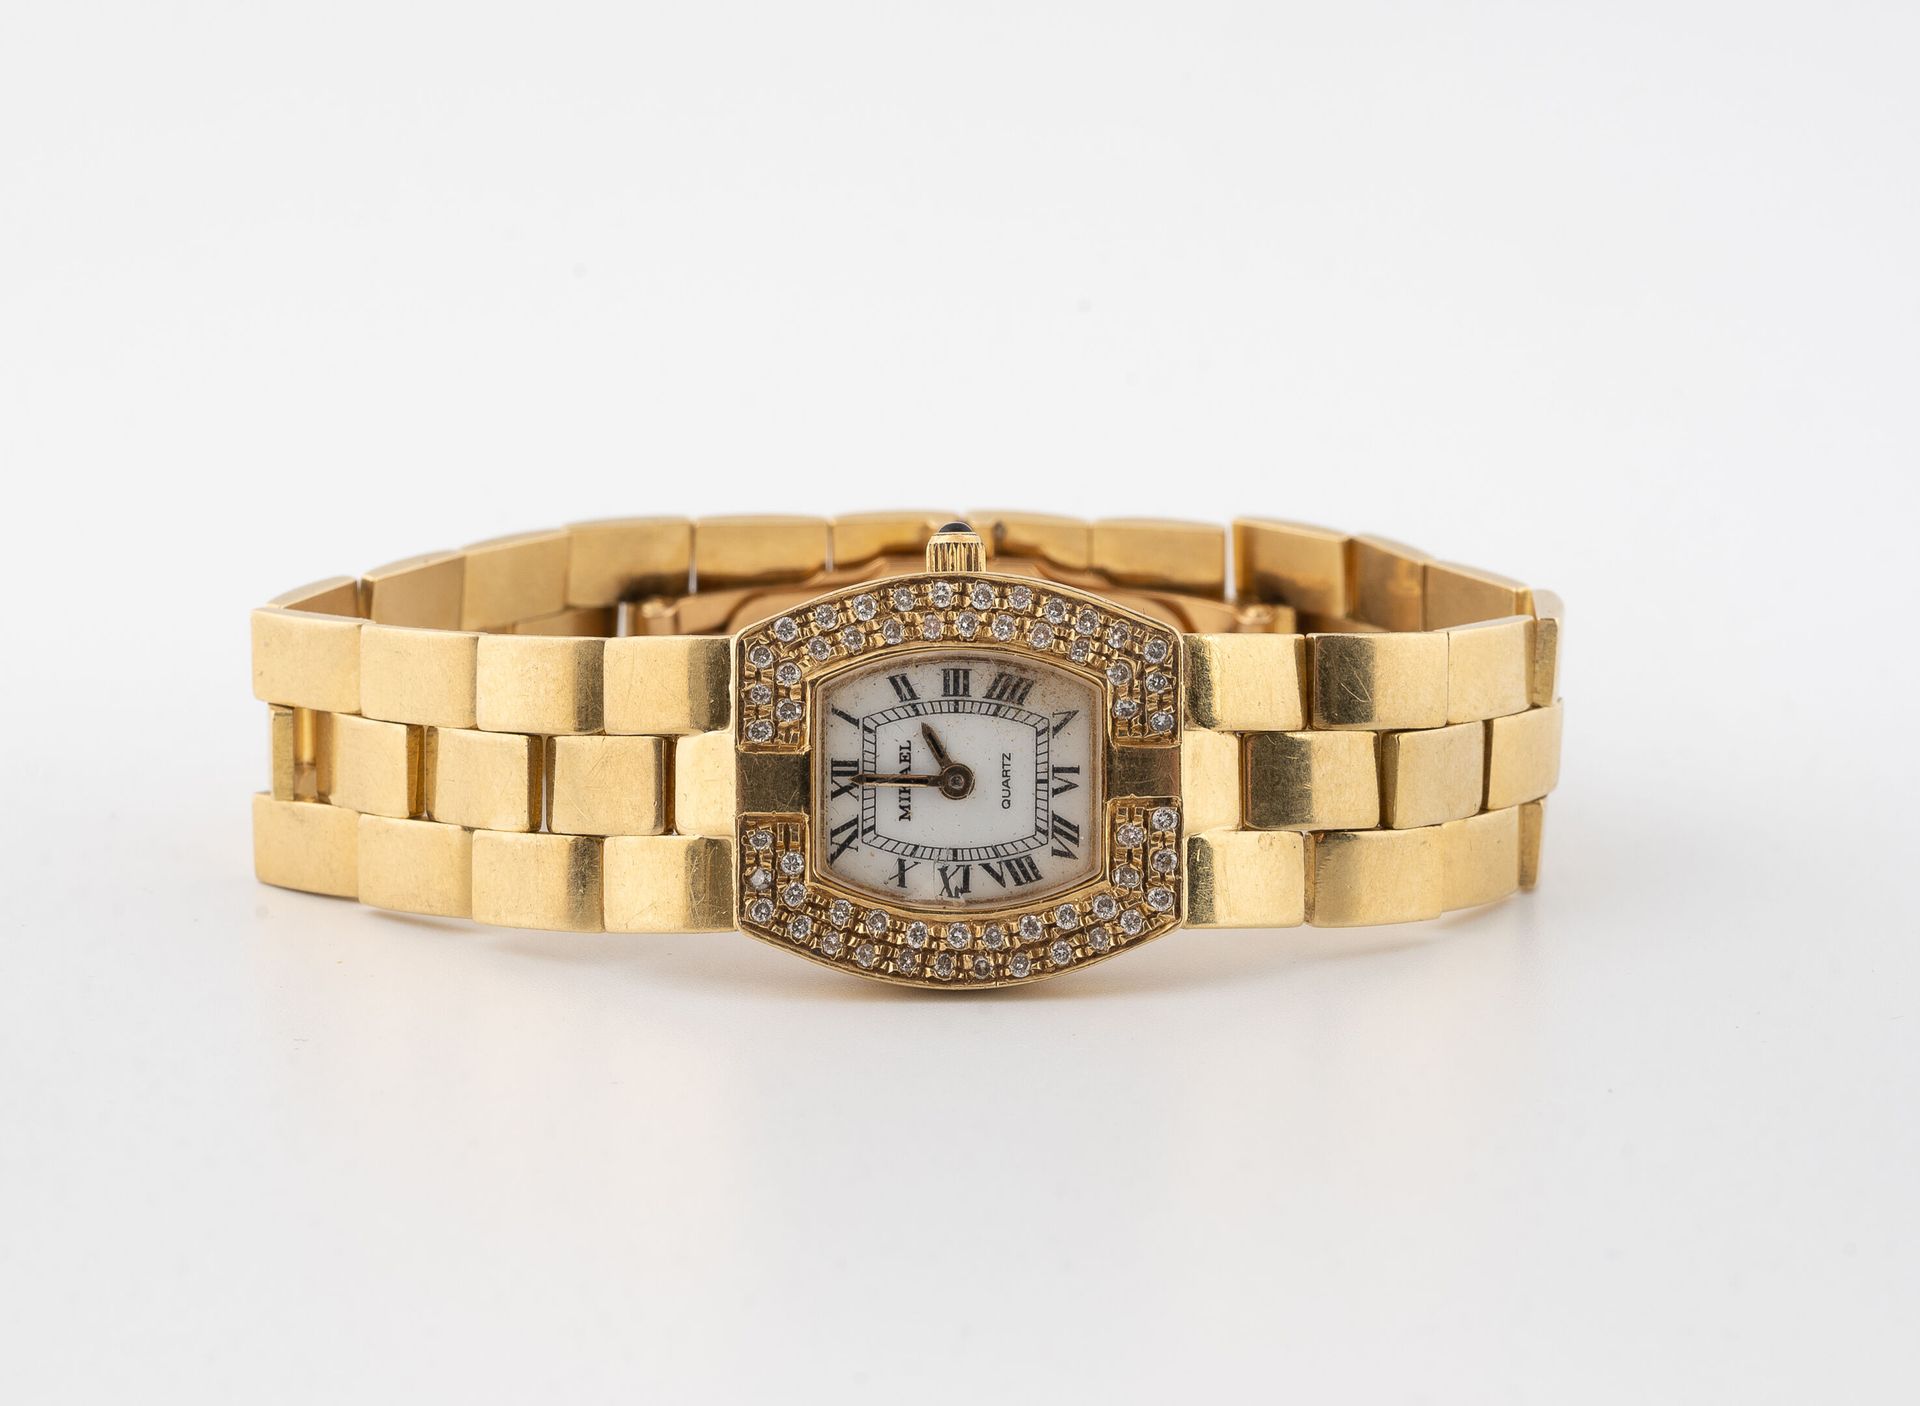 MIKAEL Reloj de pulsera de señora en oro amarillo (750).
Caja tonel, bisel engas&hellip;